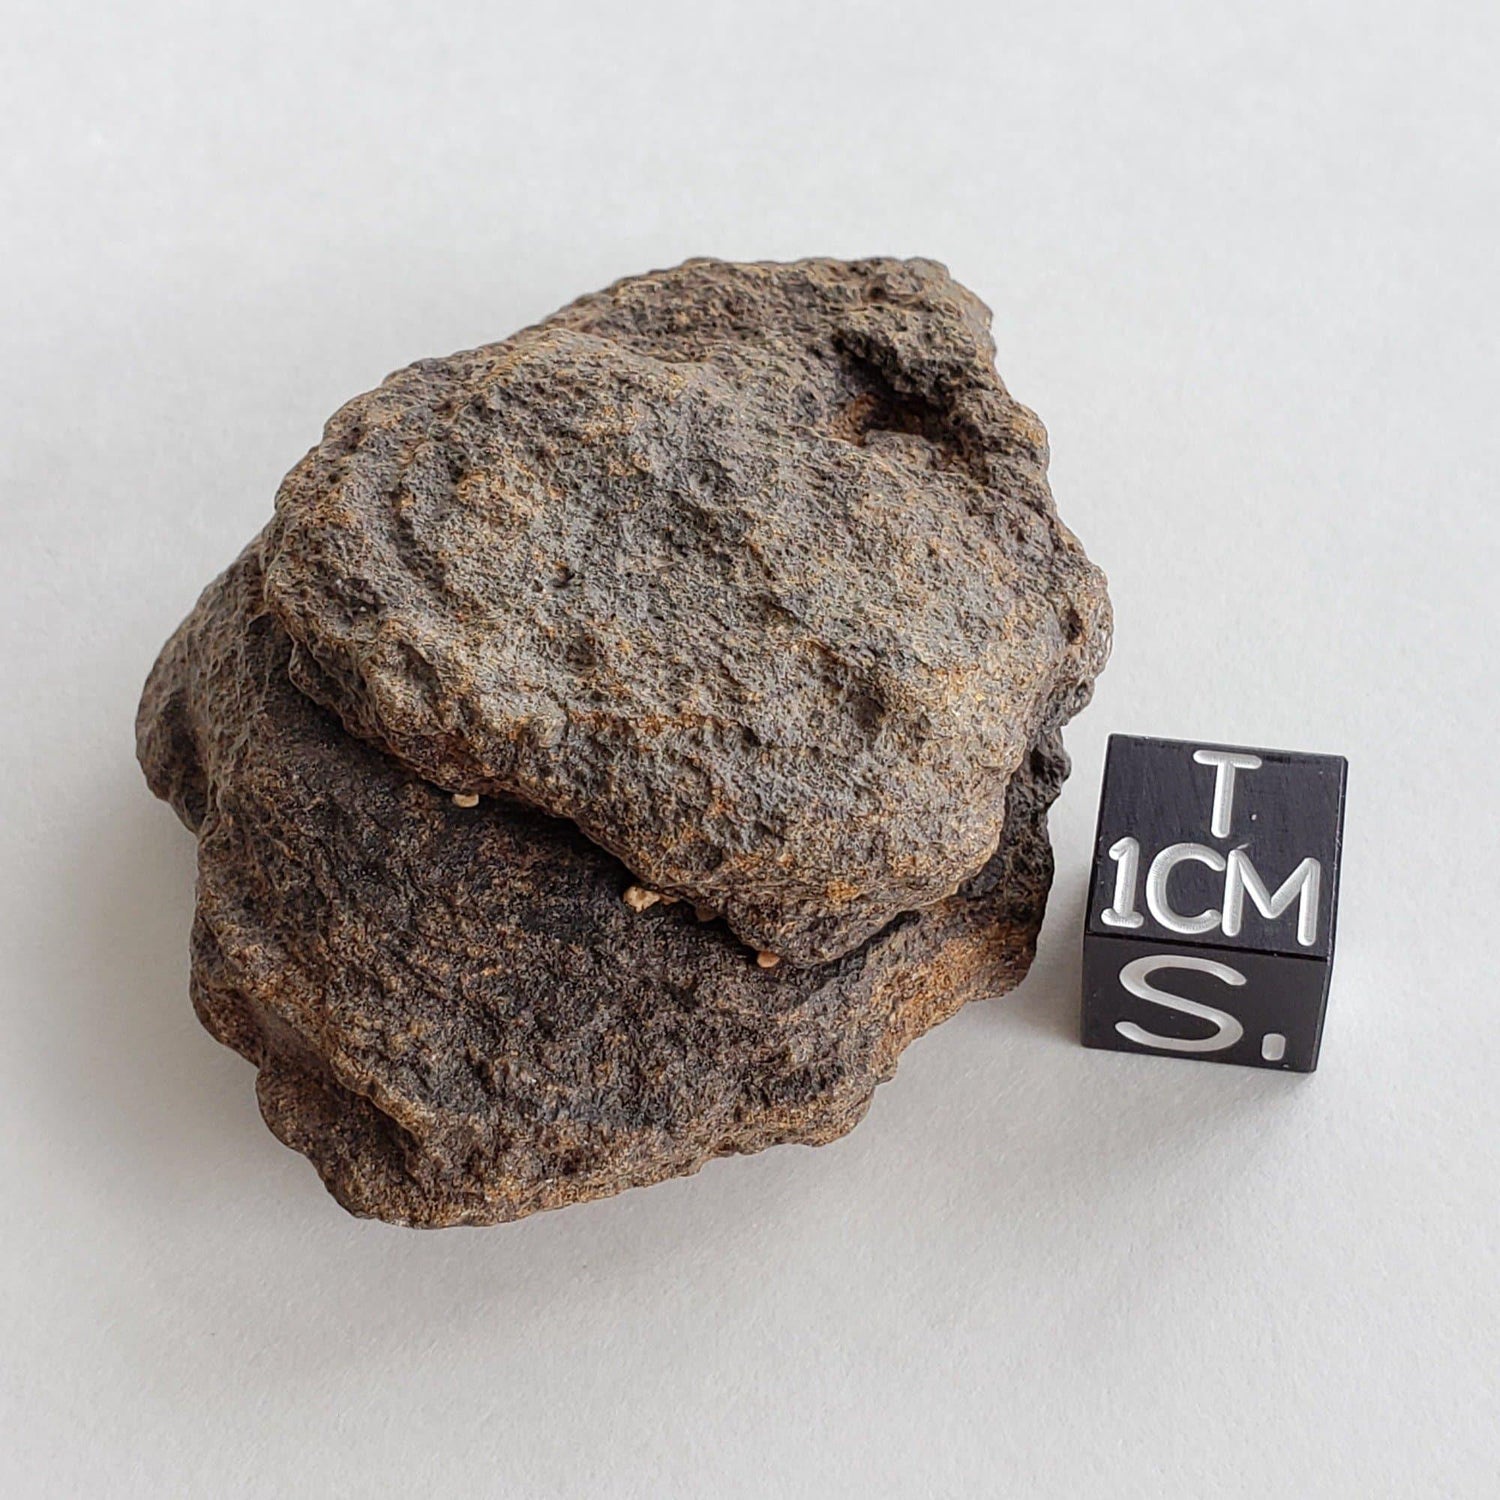 NWA 2965 Meteorite | 49.85 Grams | Individual | EL-Melt Rock | Fossil Paleomet